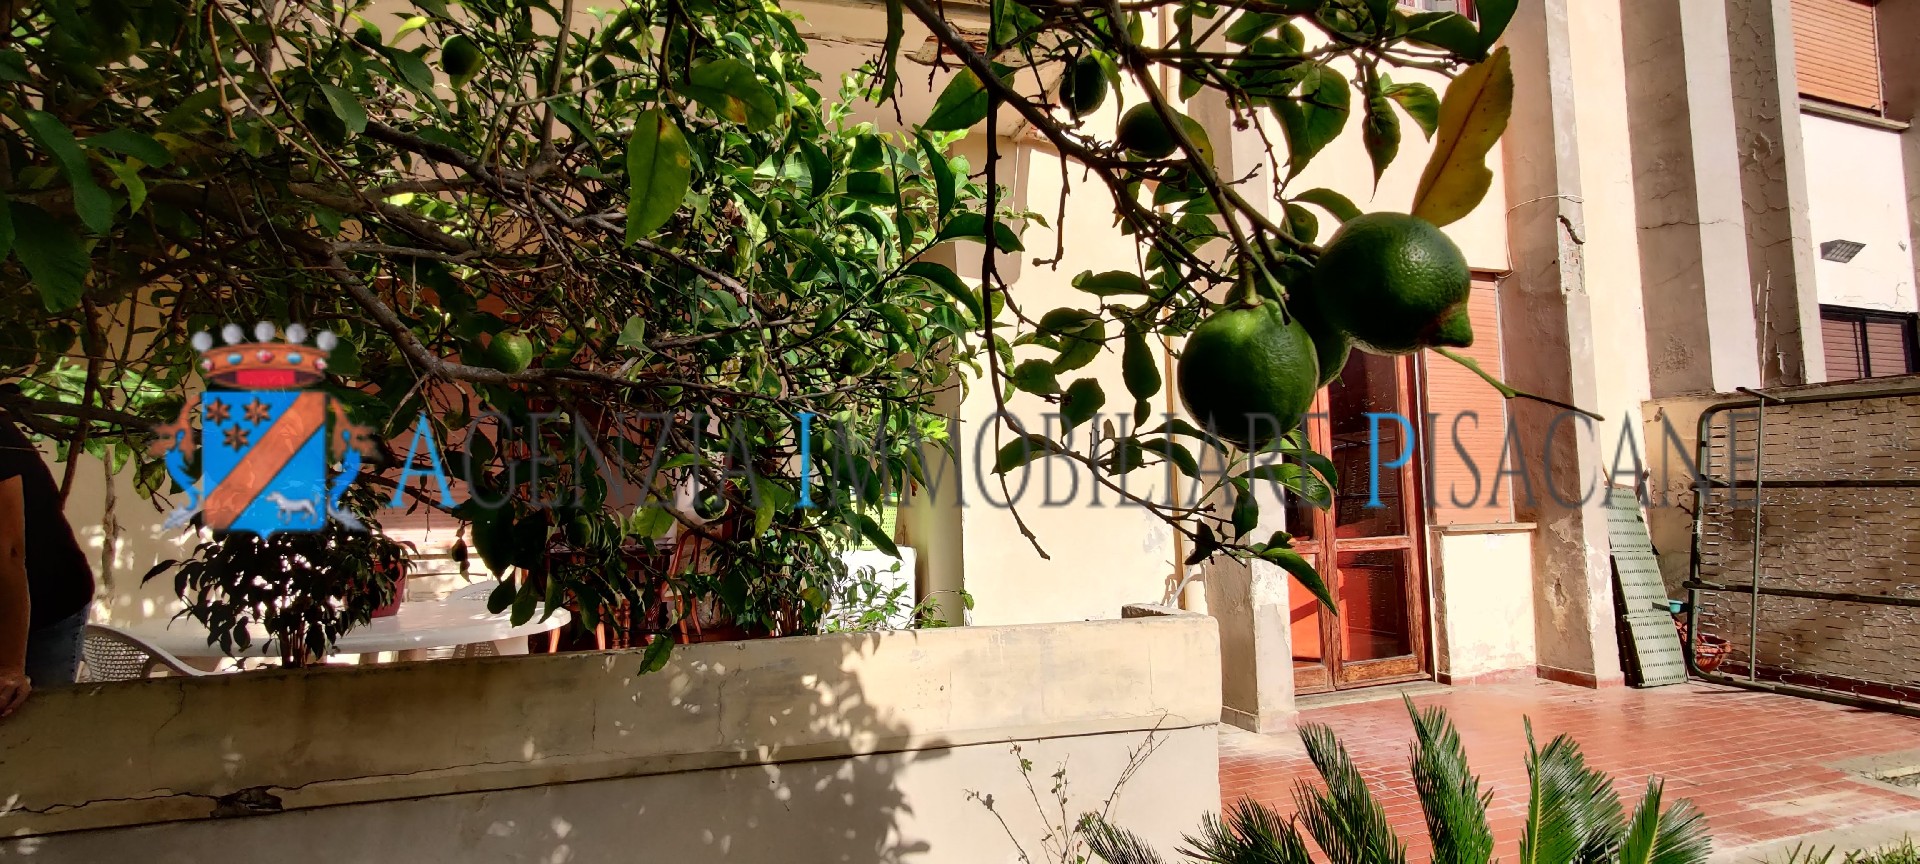 Portico e giardino posteriore con albero di limoni - Агентство недвижимости & Архитектура Pisacane